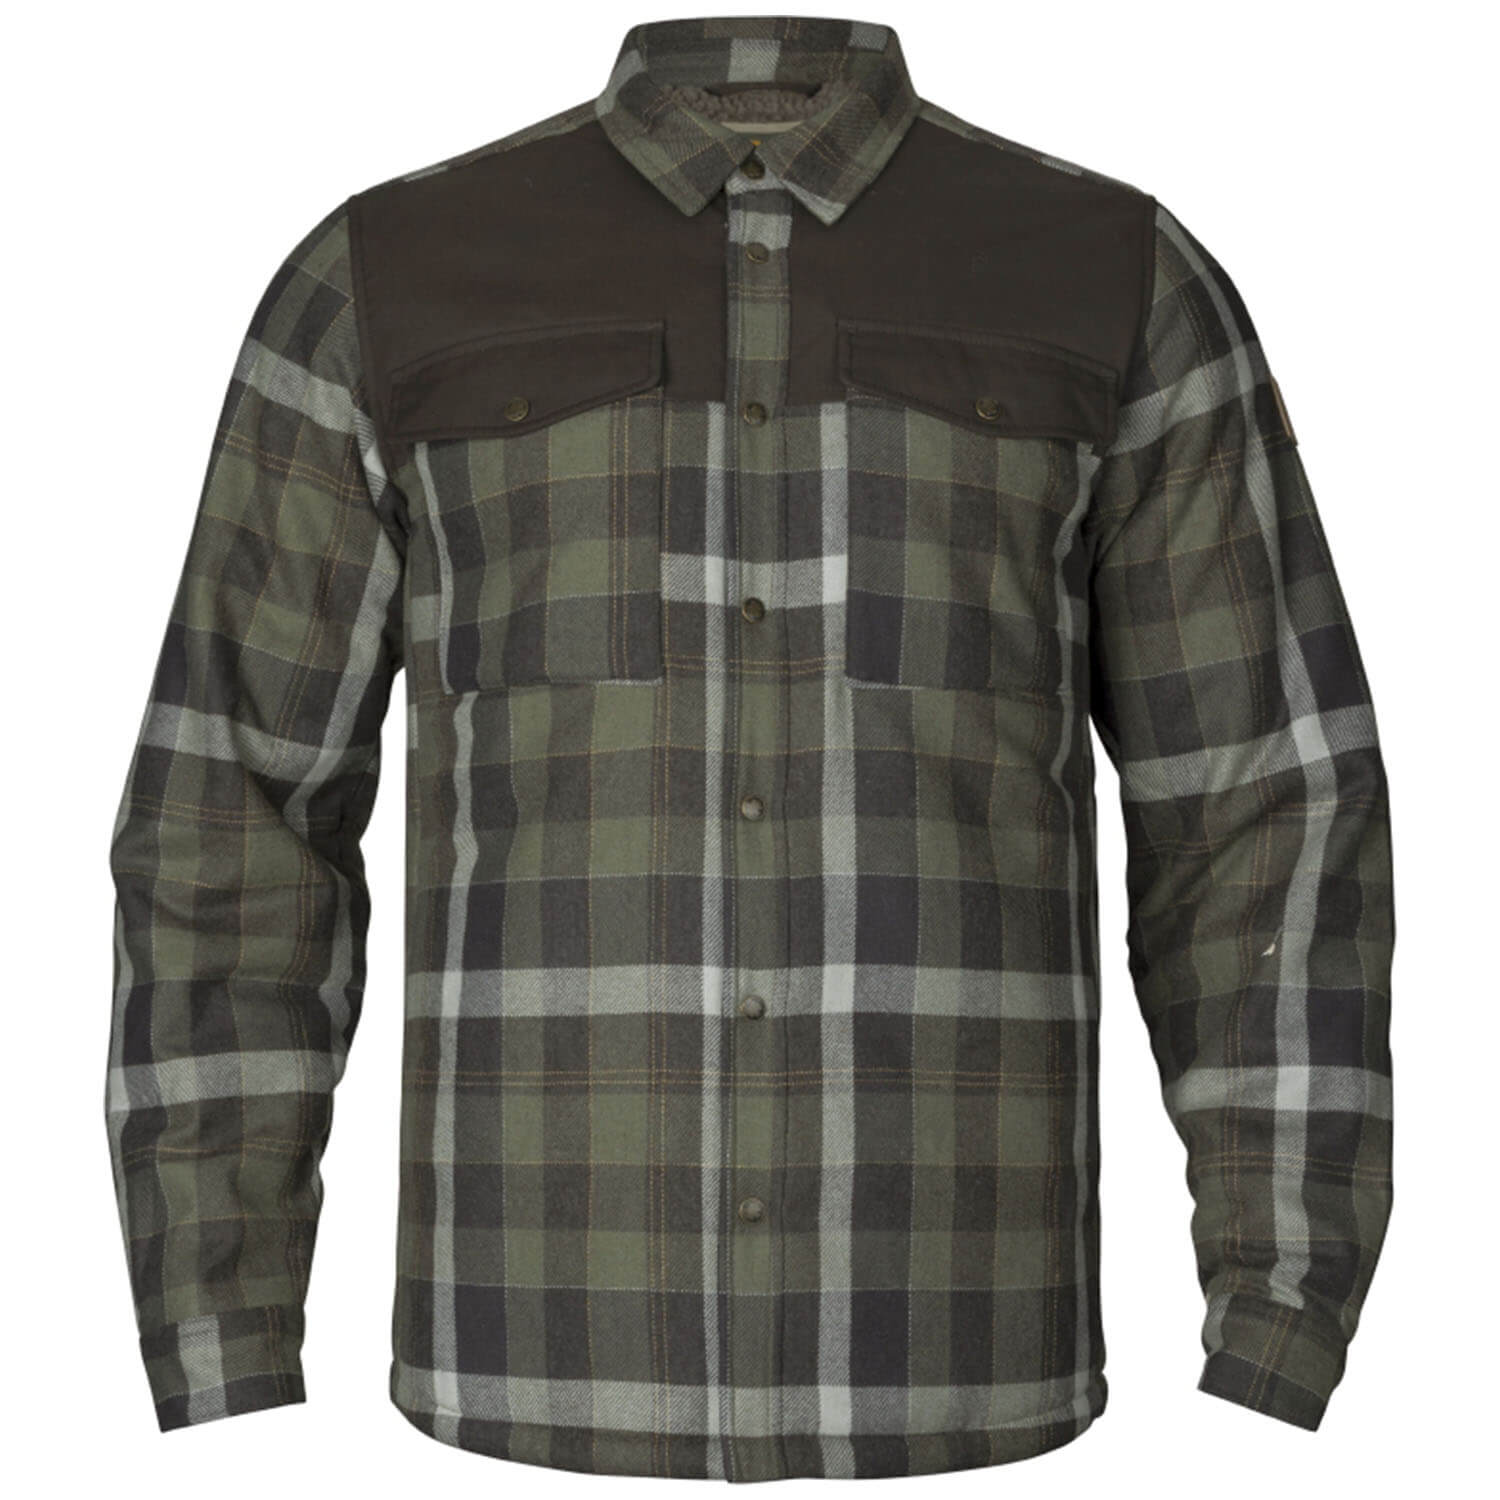 Härkila shirt Asmund wool insulated (green/pahantom) -  Roe Buck Hunting